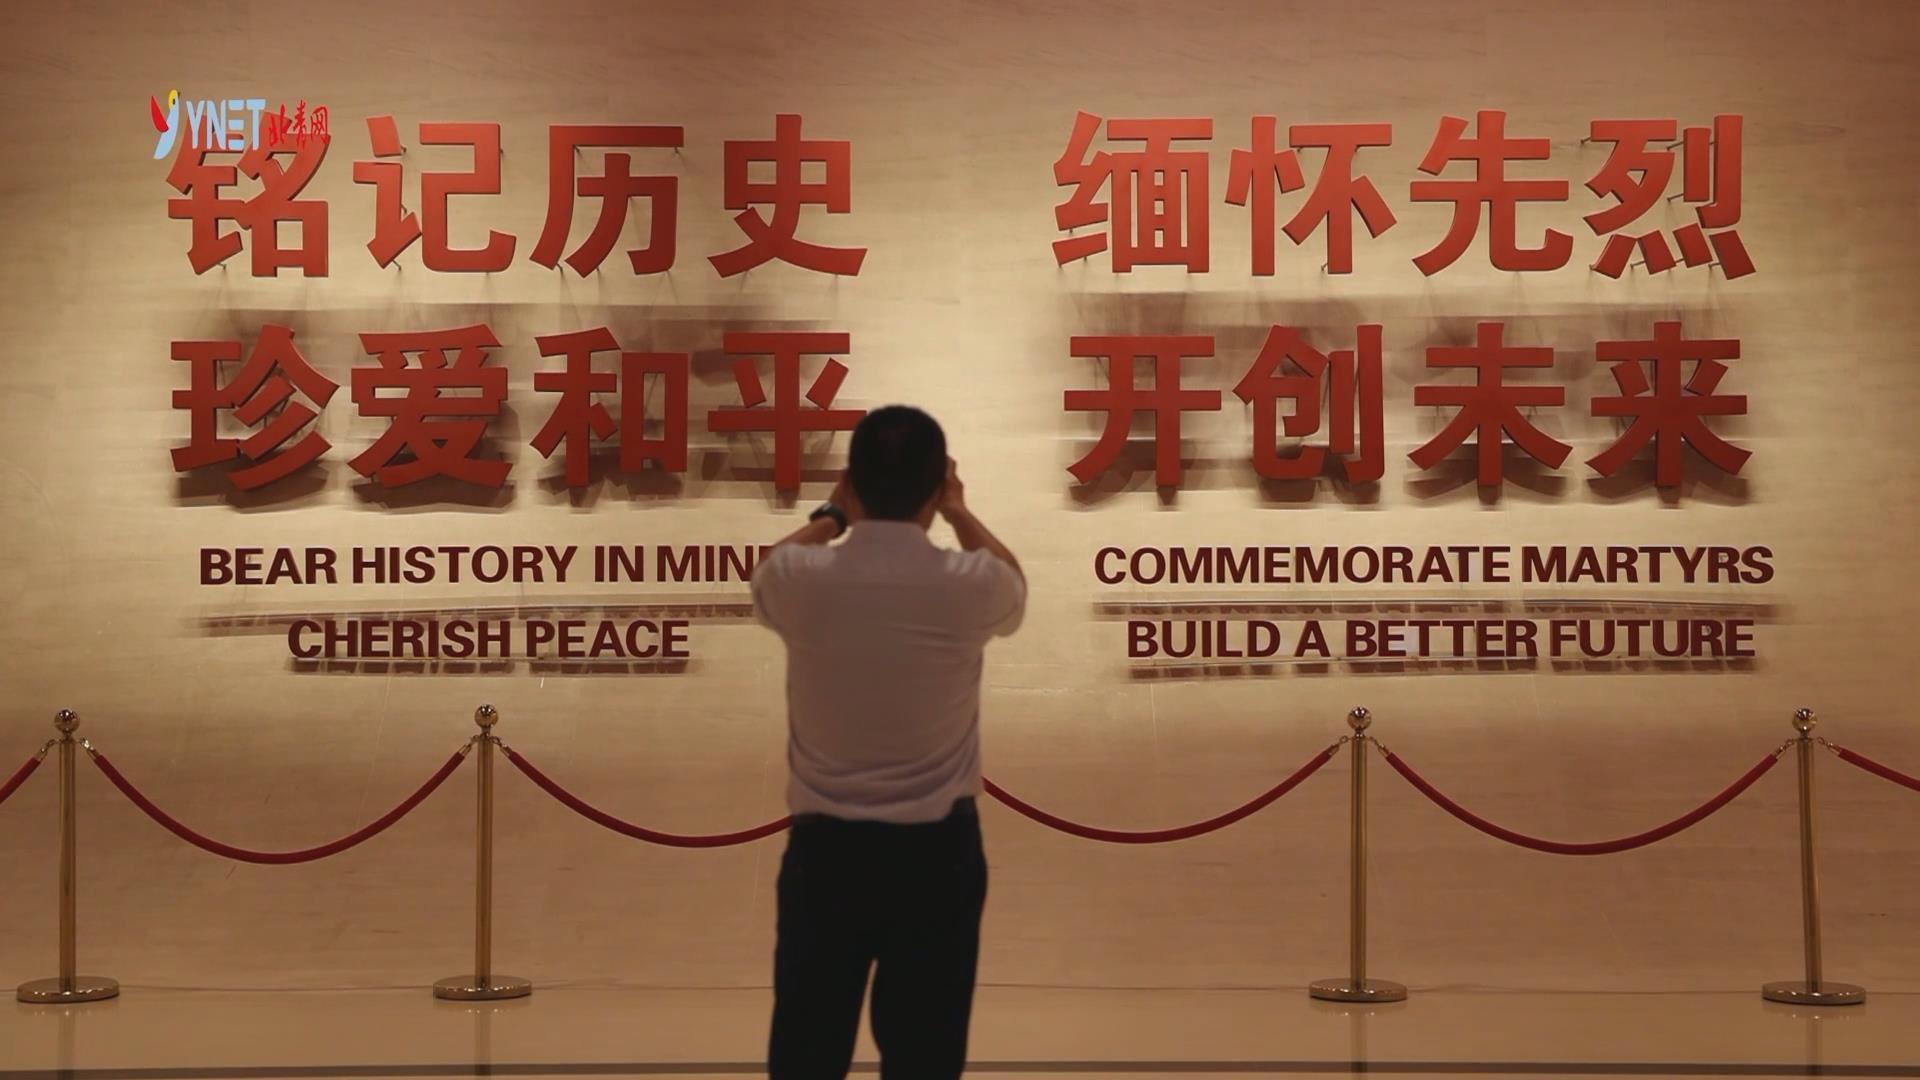 中國人民抗日戰爭紀念館——這裏述説著76年前的那場偉大勝利